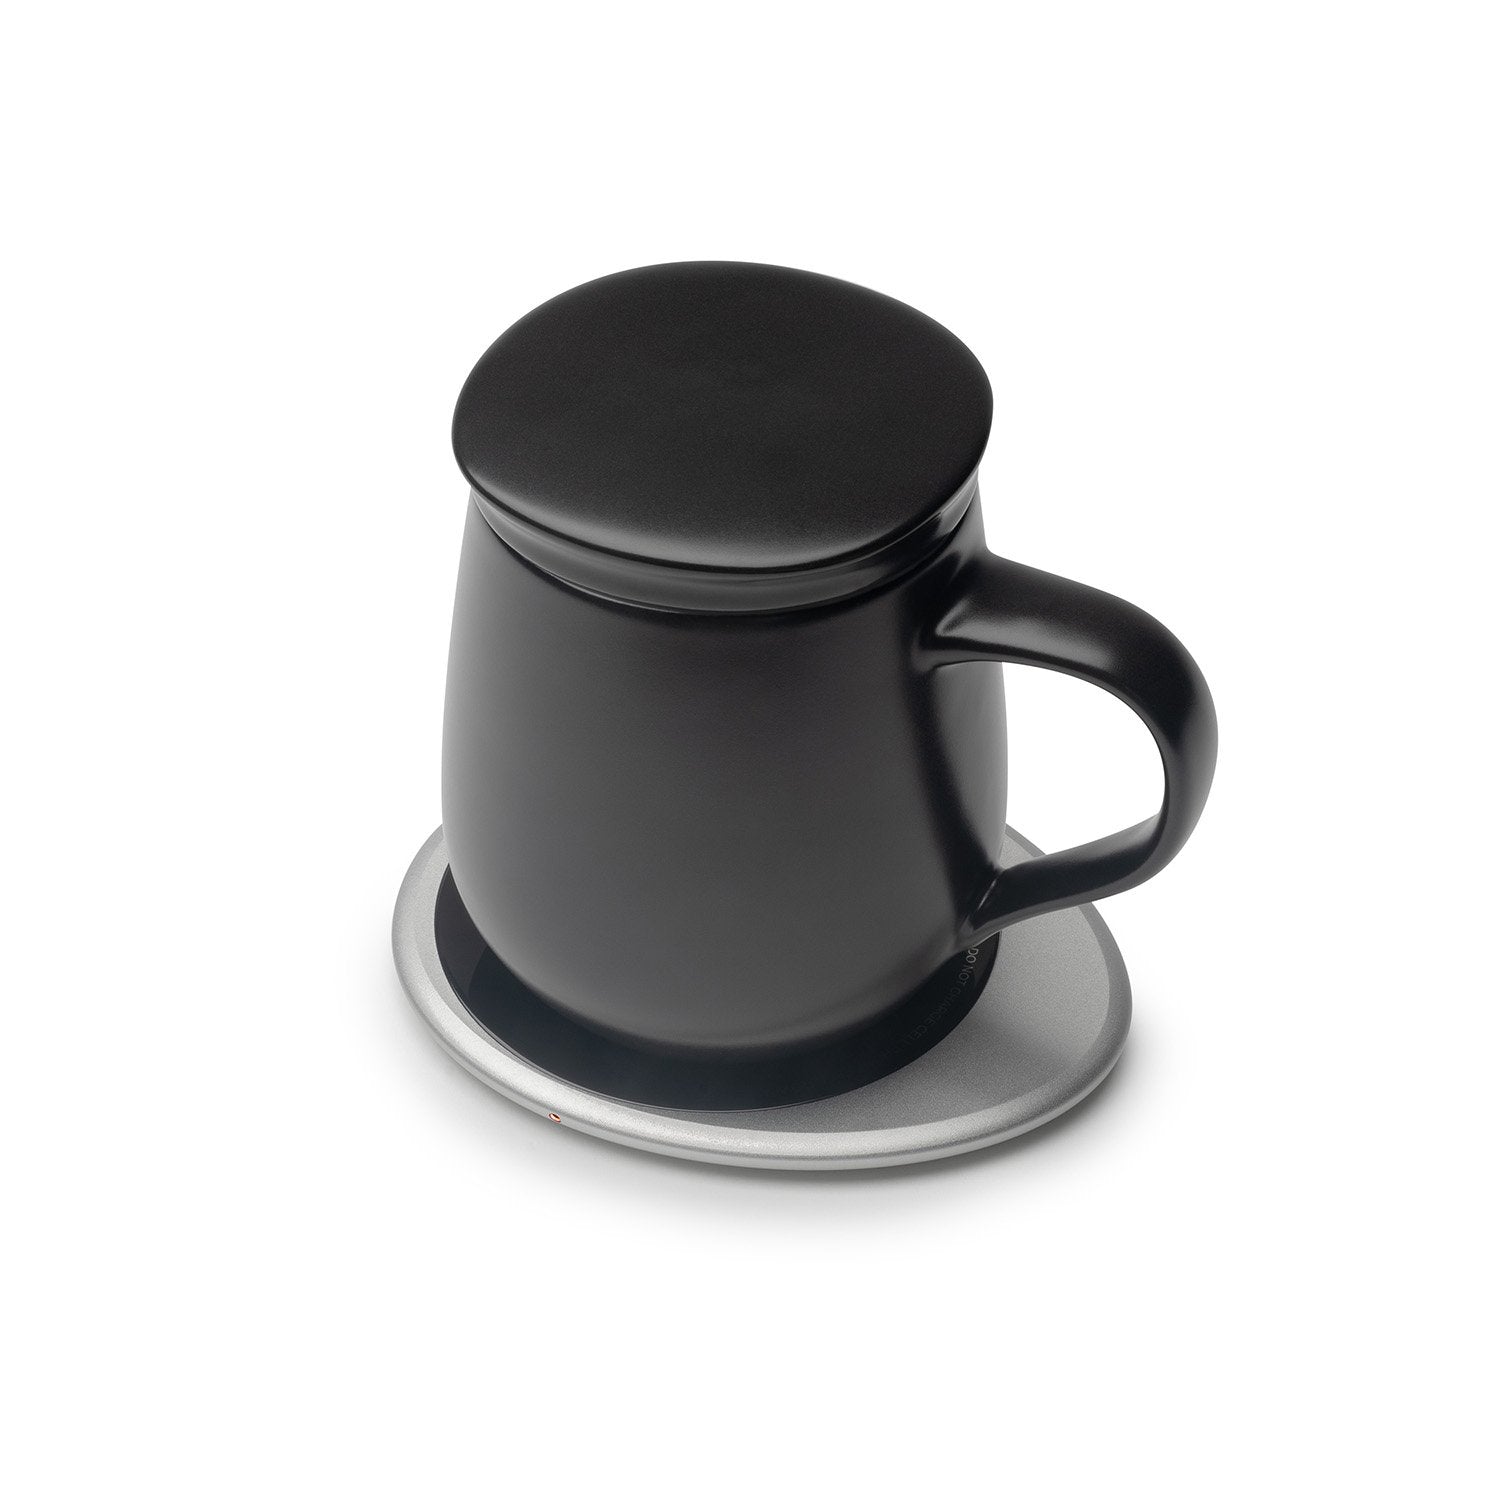 Black mug with lid on black pebble heating pad